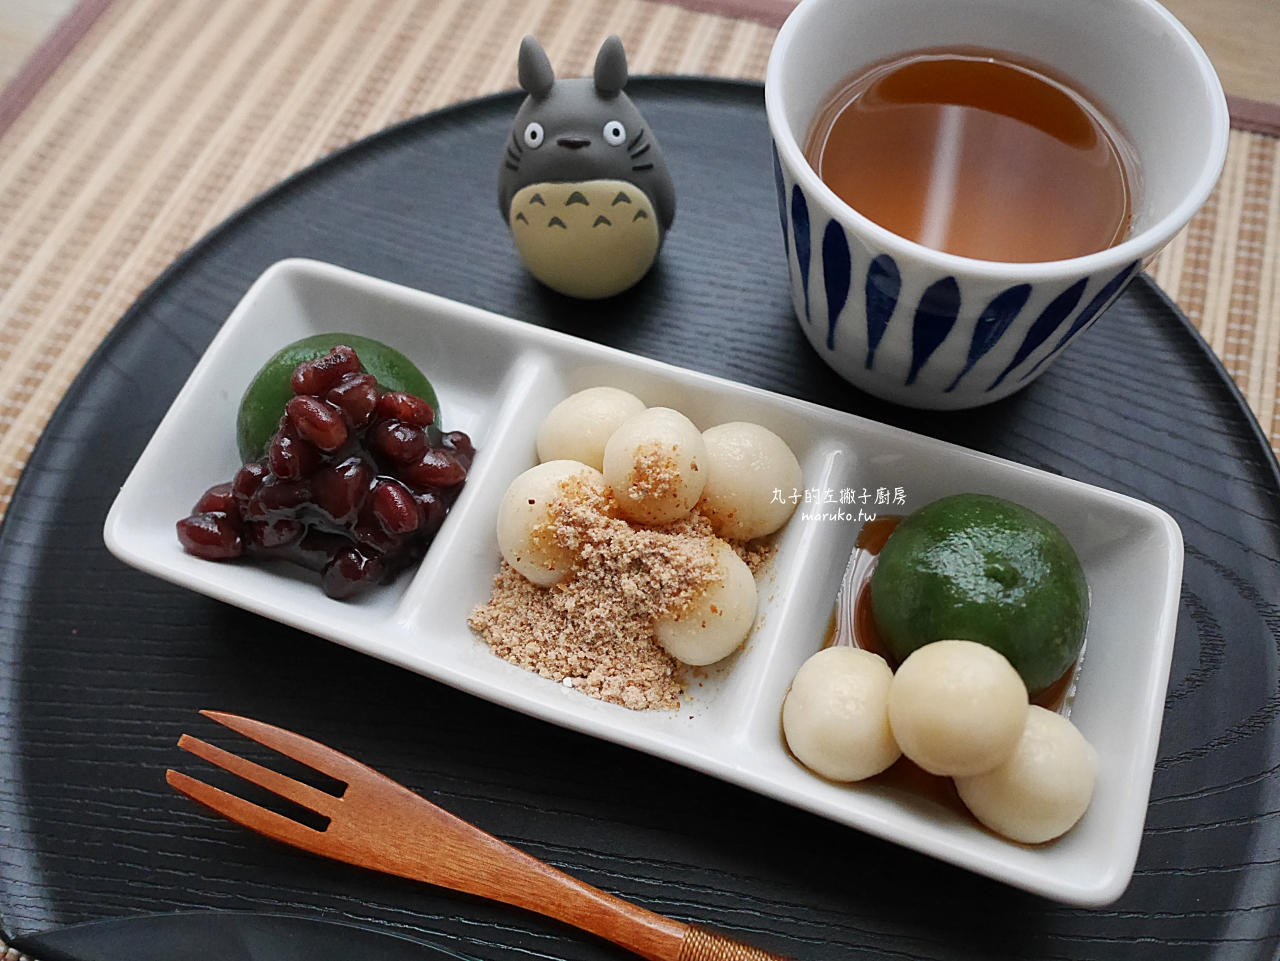 【食譜】日式糰子 二樣食材 簡單做湯圓 糯米糰子 零失敗的點心 冬至必學